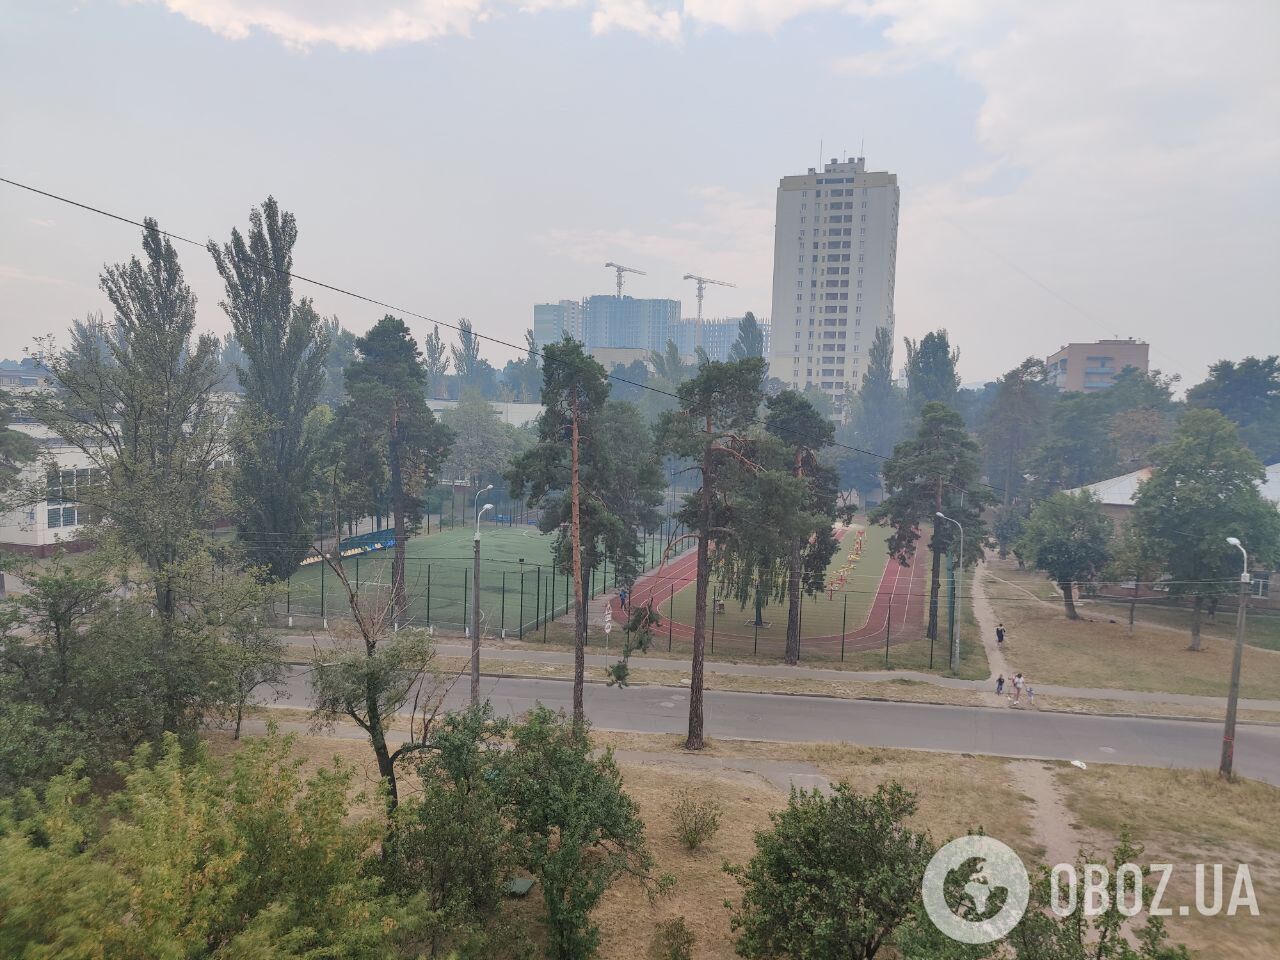 Из-за пожаров на торфяниках Киев оказался на первом месте в мире по загрязнению воздуха. Фото